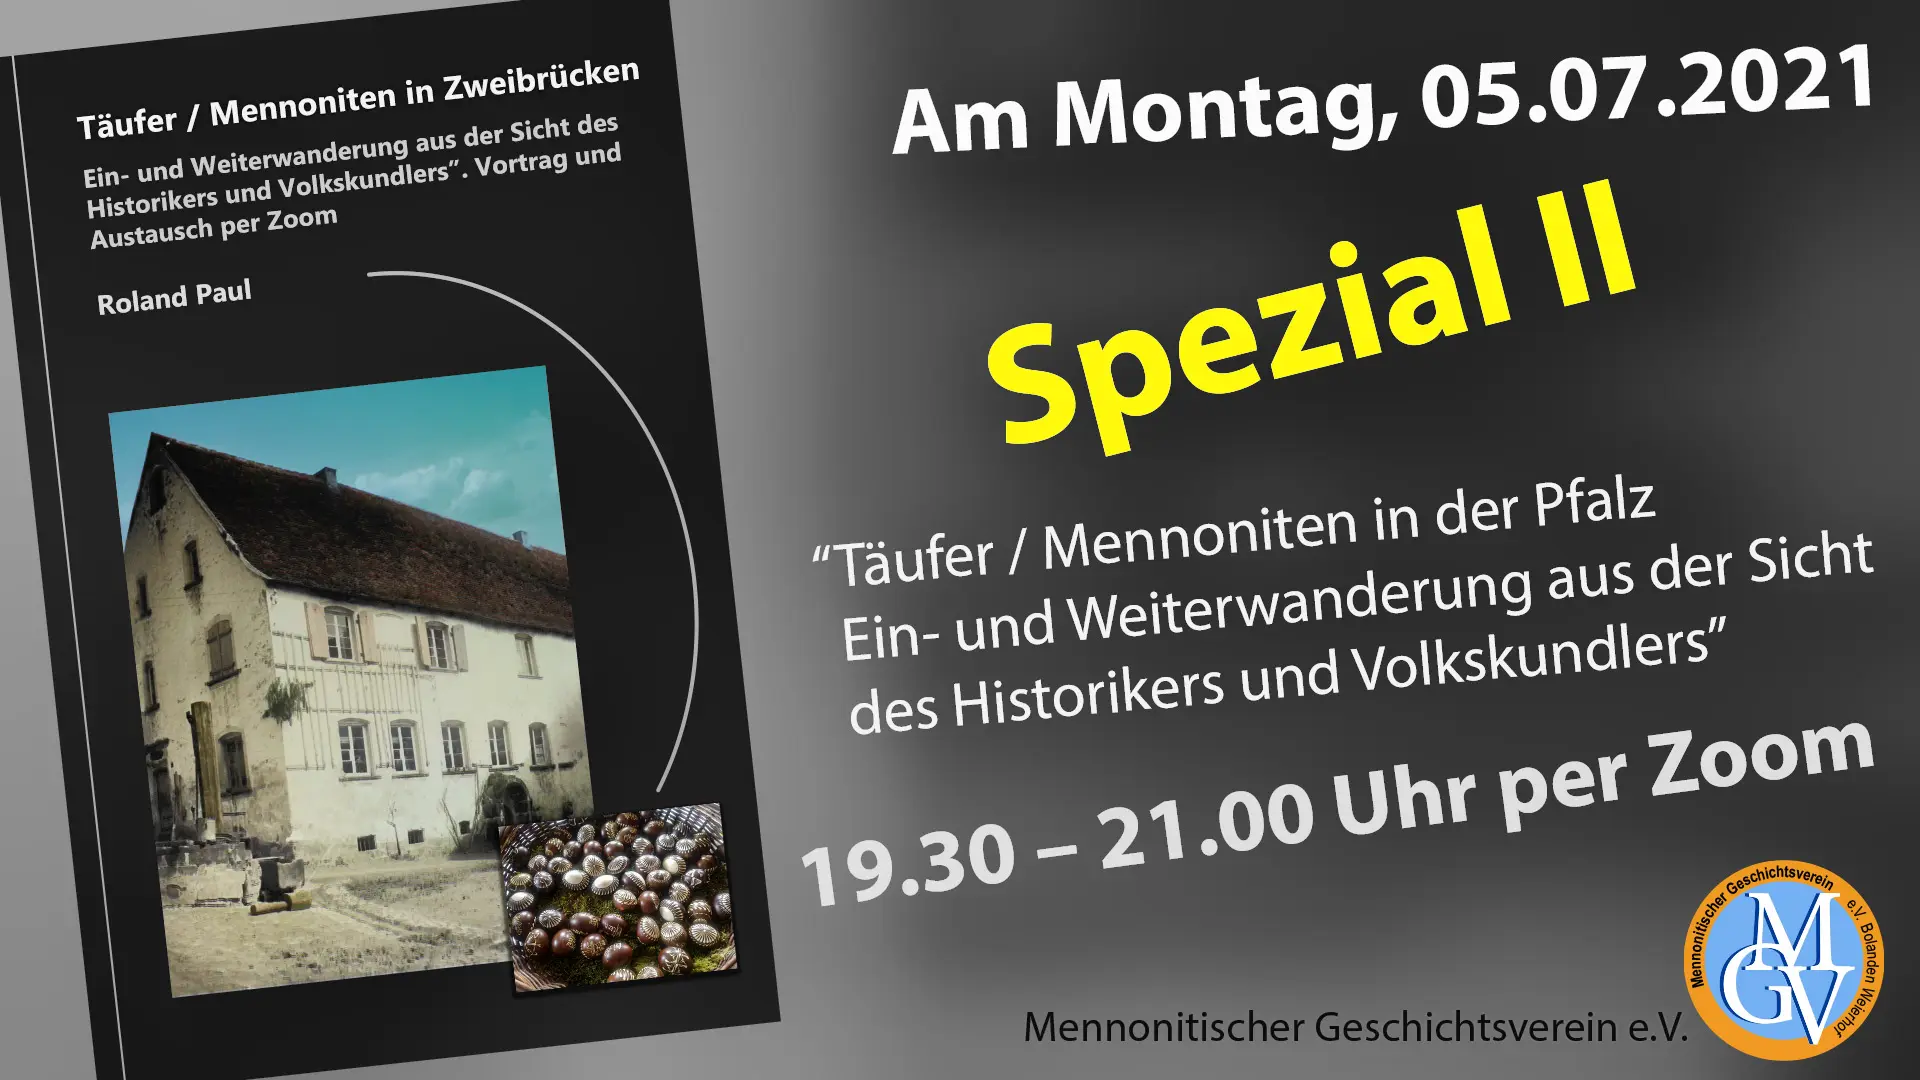 Mennonitischer Geschichtsverein. Täufer / Mennoniten in Zweibrücken, Pfalz.